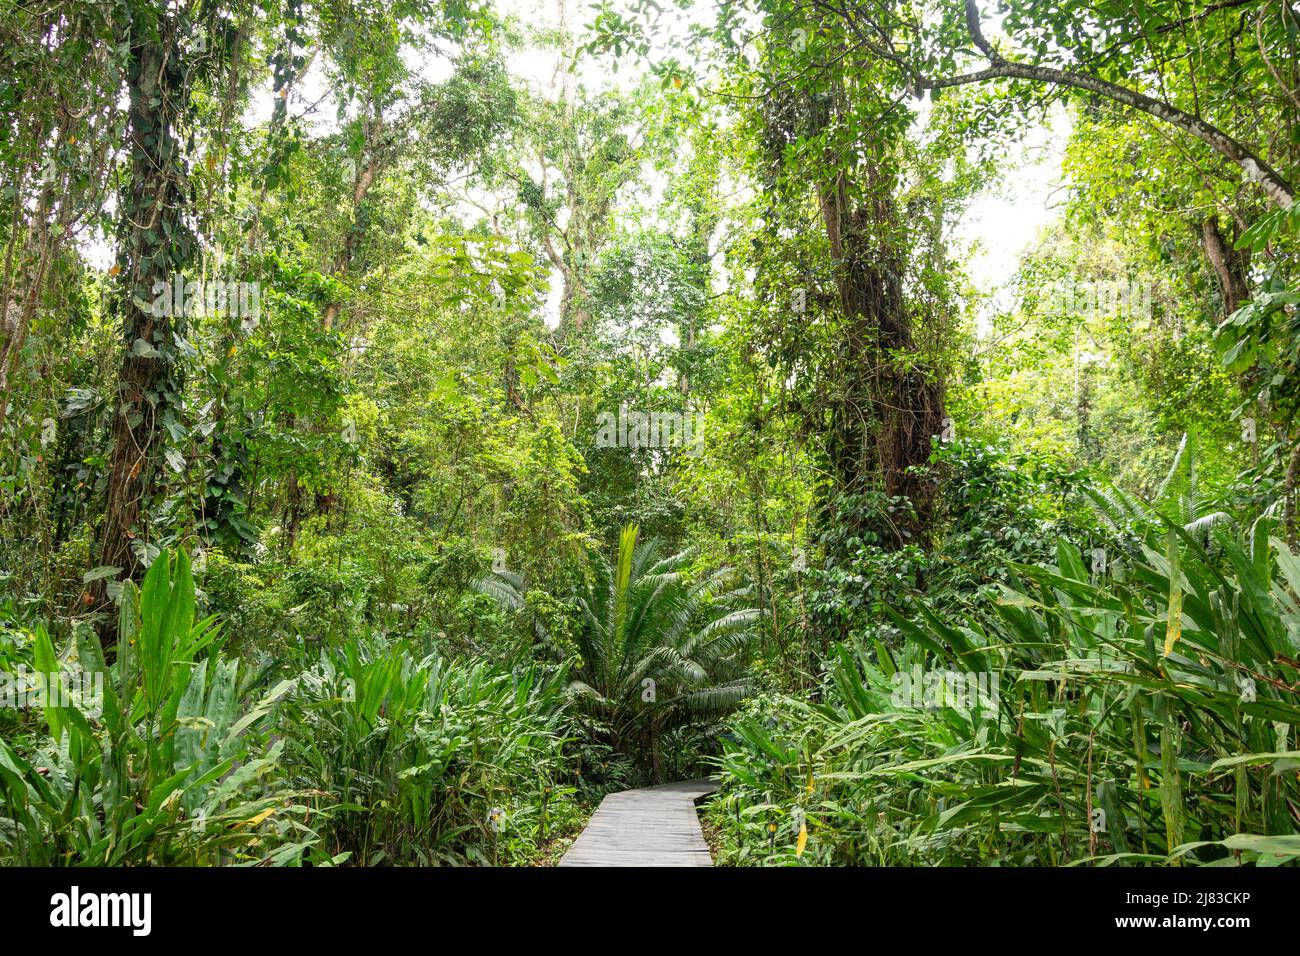 Path through tropical rainforest, Playa Grande, Parque Nacional Manzanillo, Limón Province, Republic of Costa Rica Stock Photo